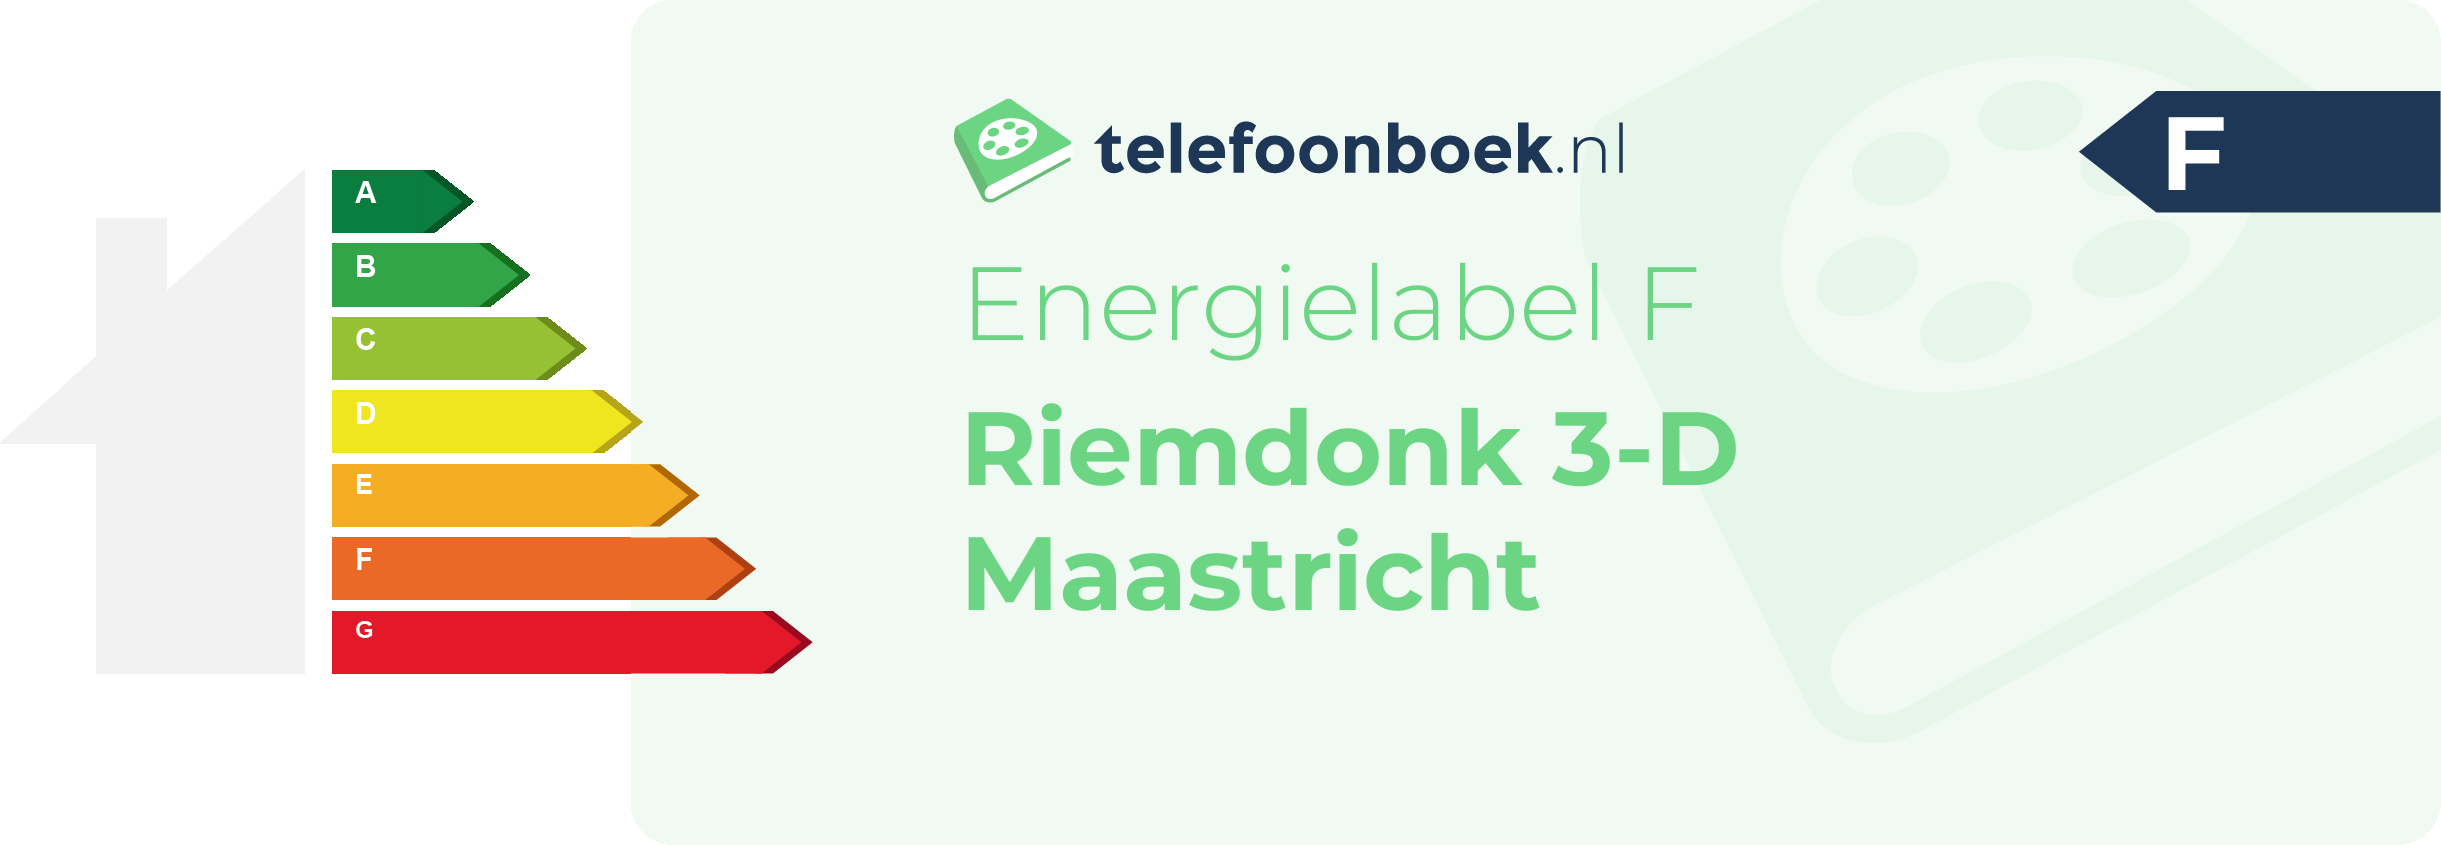 Energielabel Riemdonk 3-D Maastricht